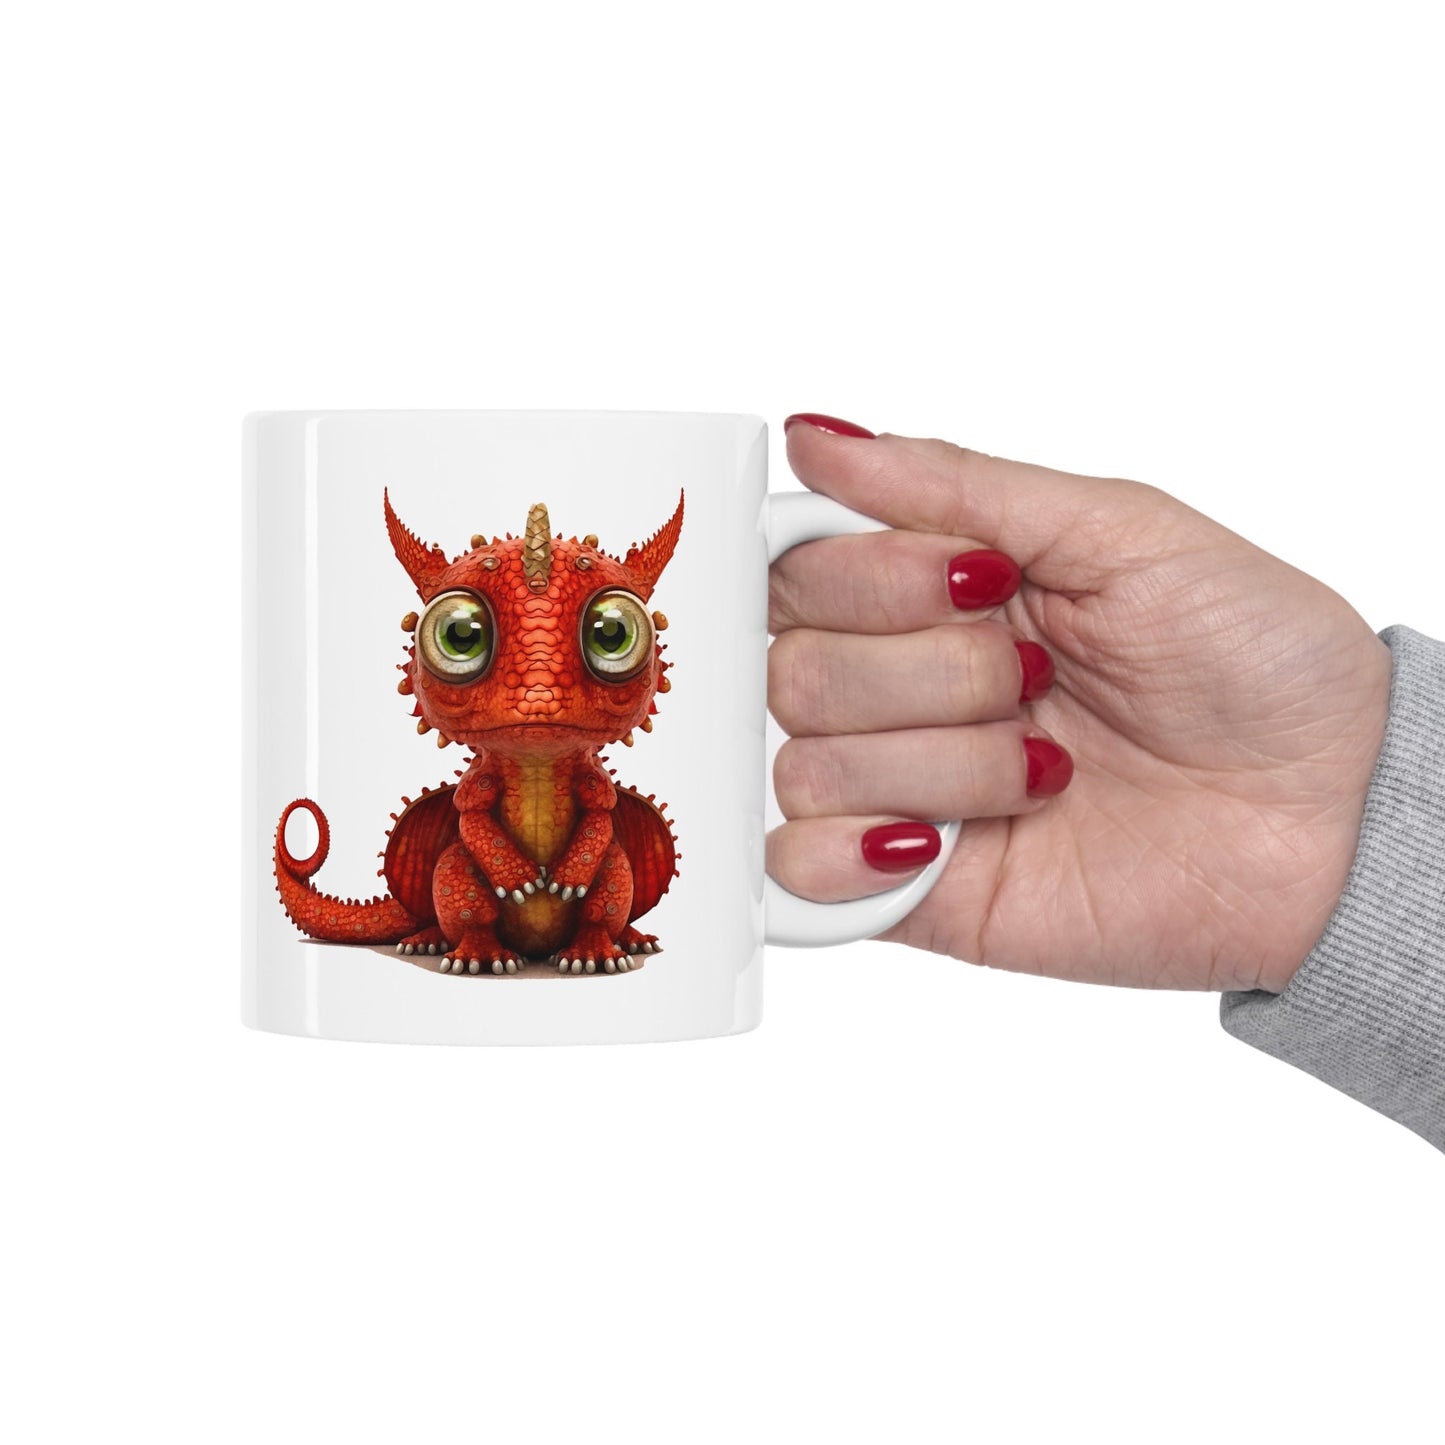 Ruby red Adorable Baby Dragon Coffee Mug, Heart of a Dragon Mug, White Ceramic Mug for Dragon Lovers, Gift Mug for your Dragon Spirit